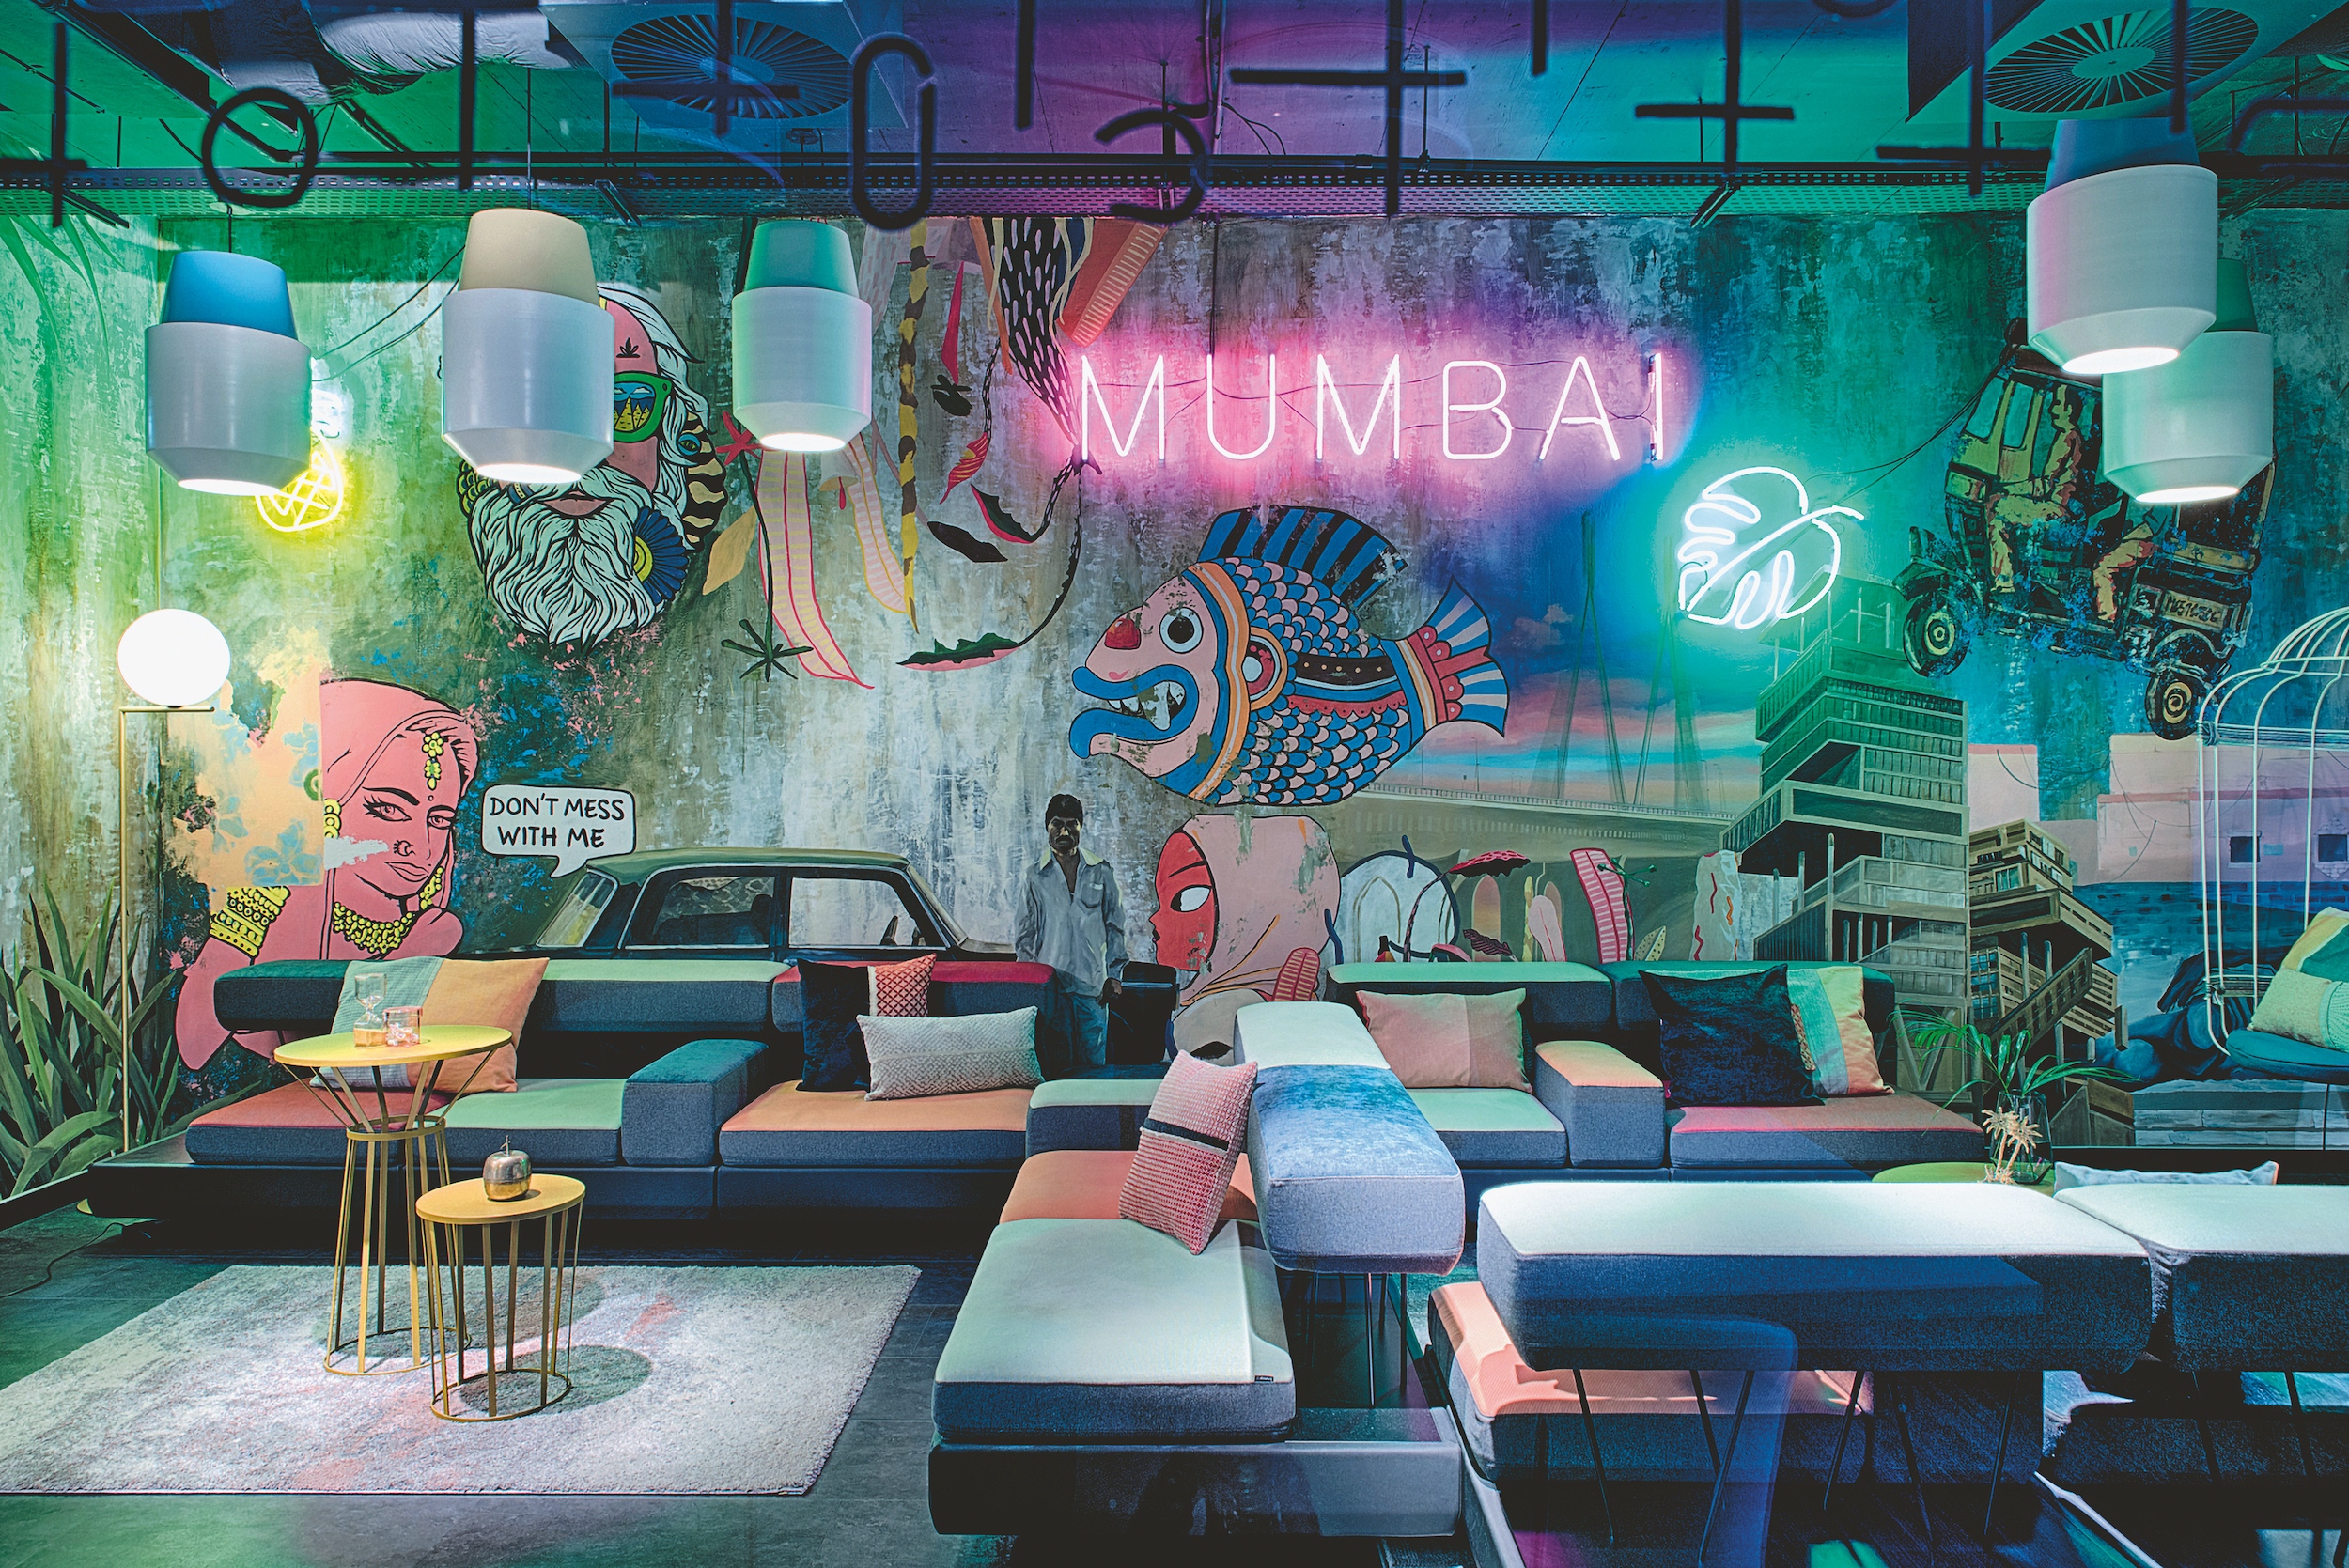 Dealogic iroda, ahol a pihenőzónákat a világ nagyvárosai inspirálták. A képen láthatót például Bombay formavilága és lenyűgöző színei. Fotó: Filep Krisztina